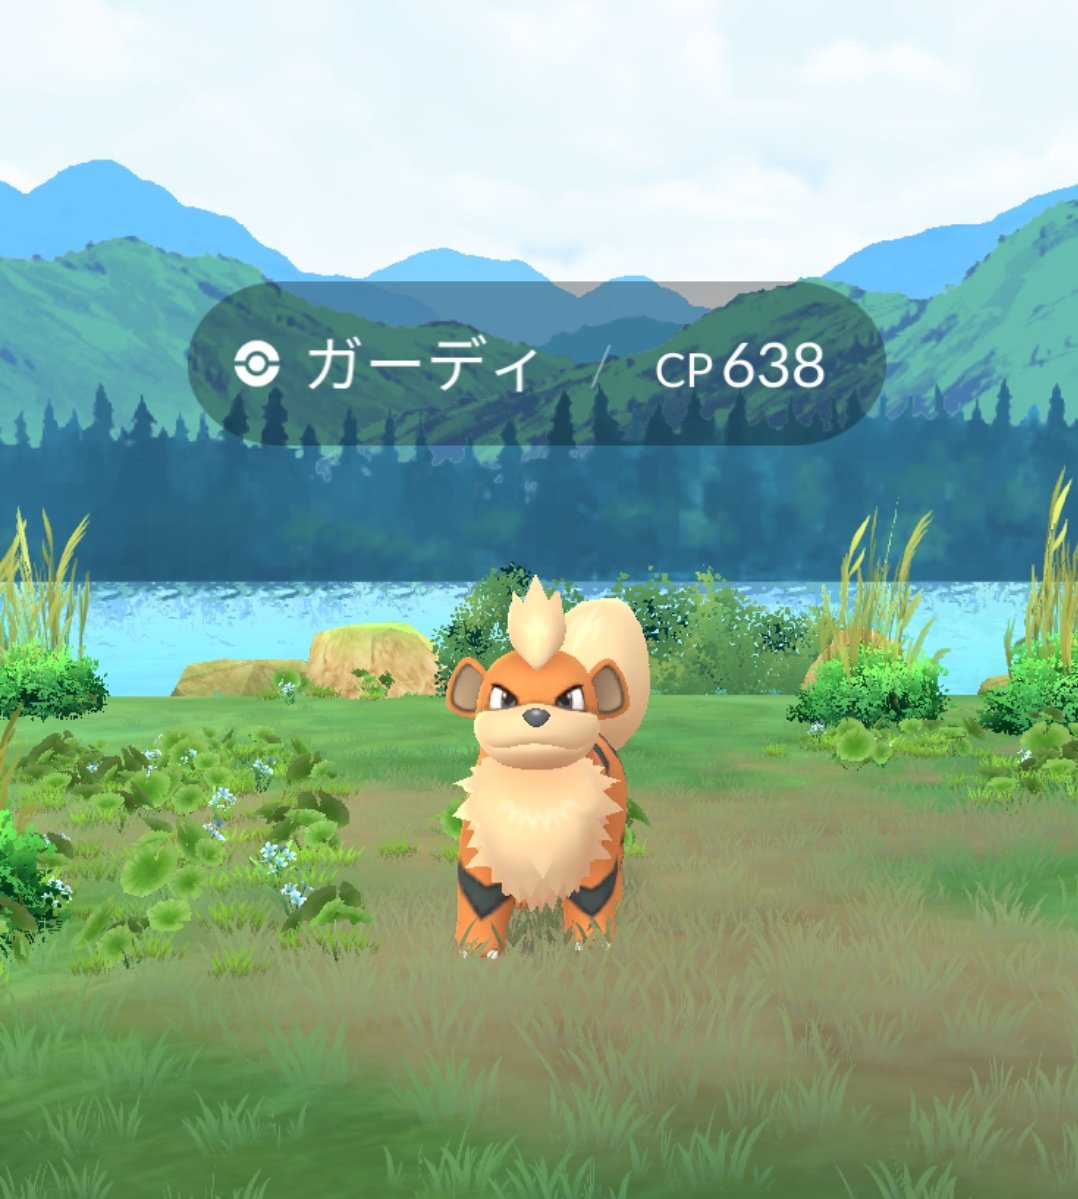 【Pokémon GO 再発見】 ⚡「今いる場所」を再発見 ビジュアルが、現実世界の環境と季節を反映して変化するようになりました。 トレーナーが今いるバイオームのビジュアルが、マップ、捕獲画面、トレーナーバトルに反映されています。 9db.jp/pokemongo/data… #ポケモンGO